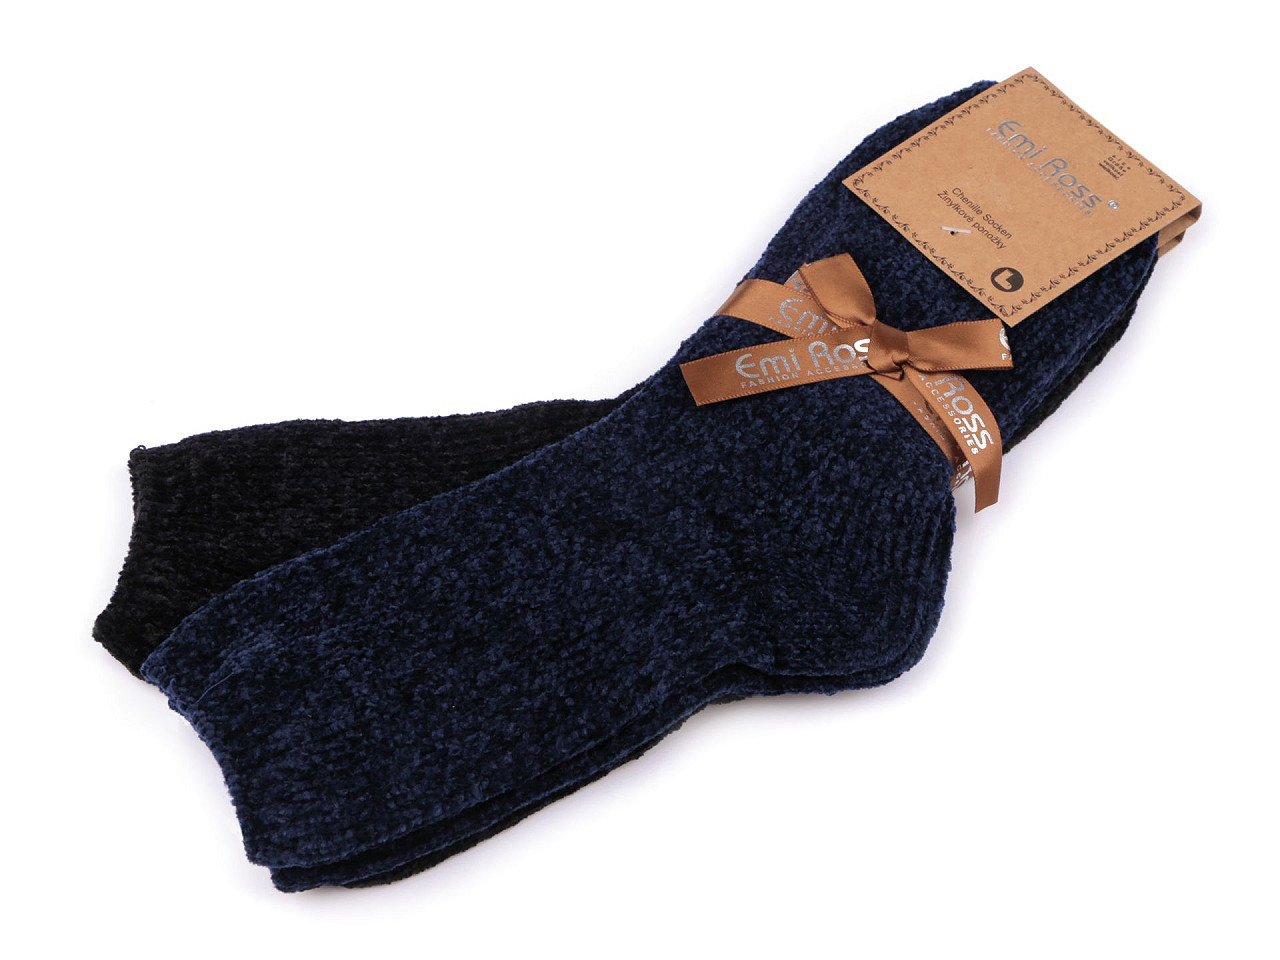 Dámské žinylkové ponožky Emi Ross, barva 28 (vel. 39-42) mix